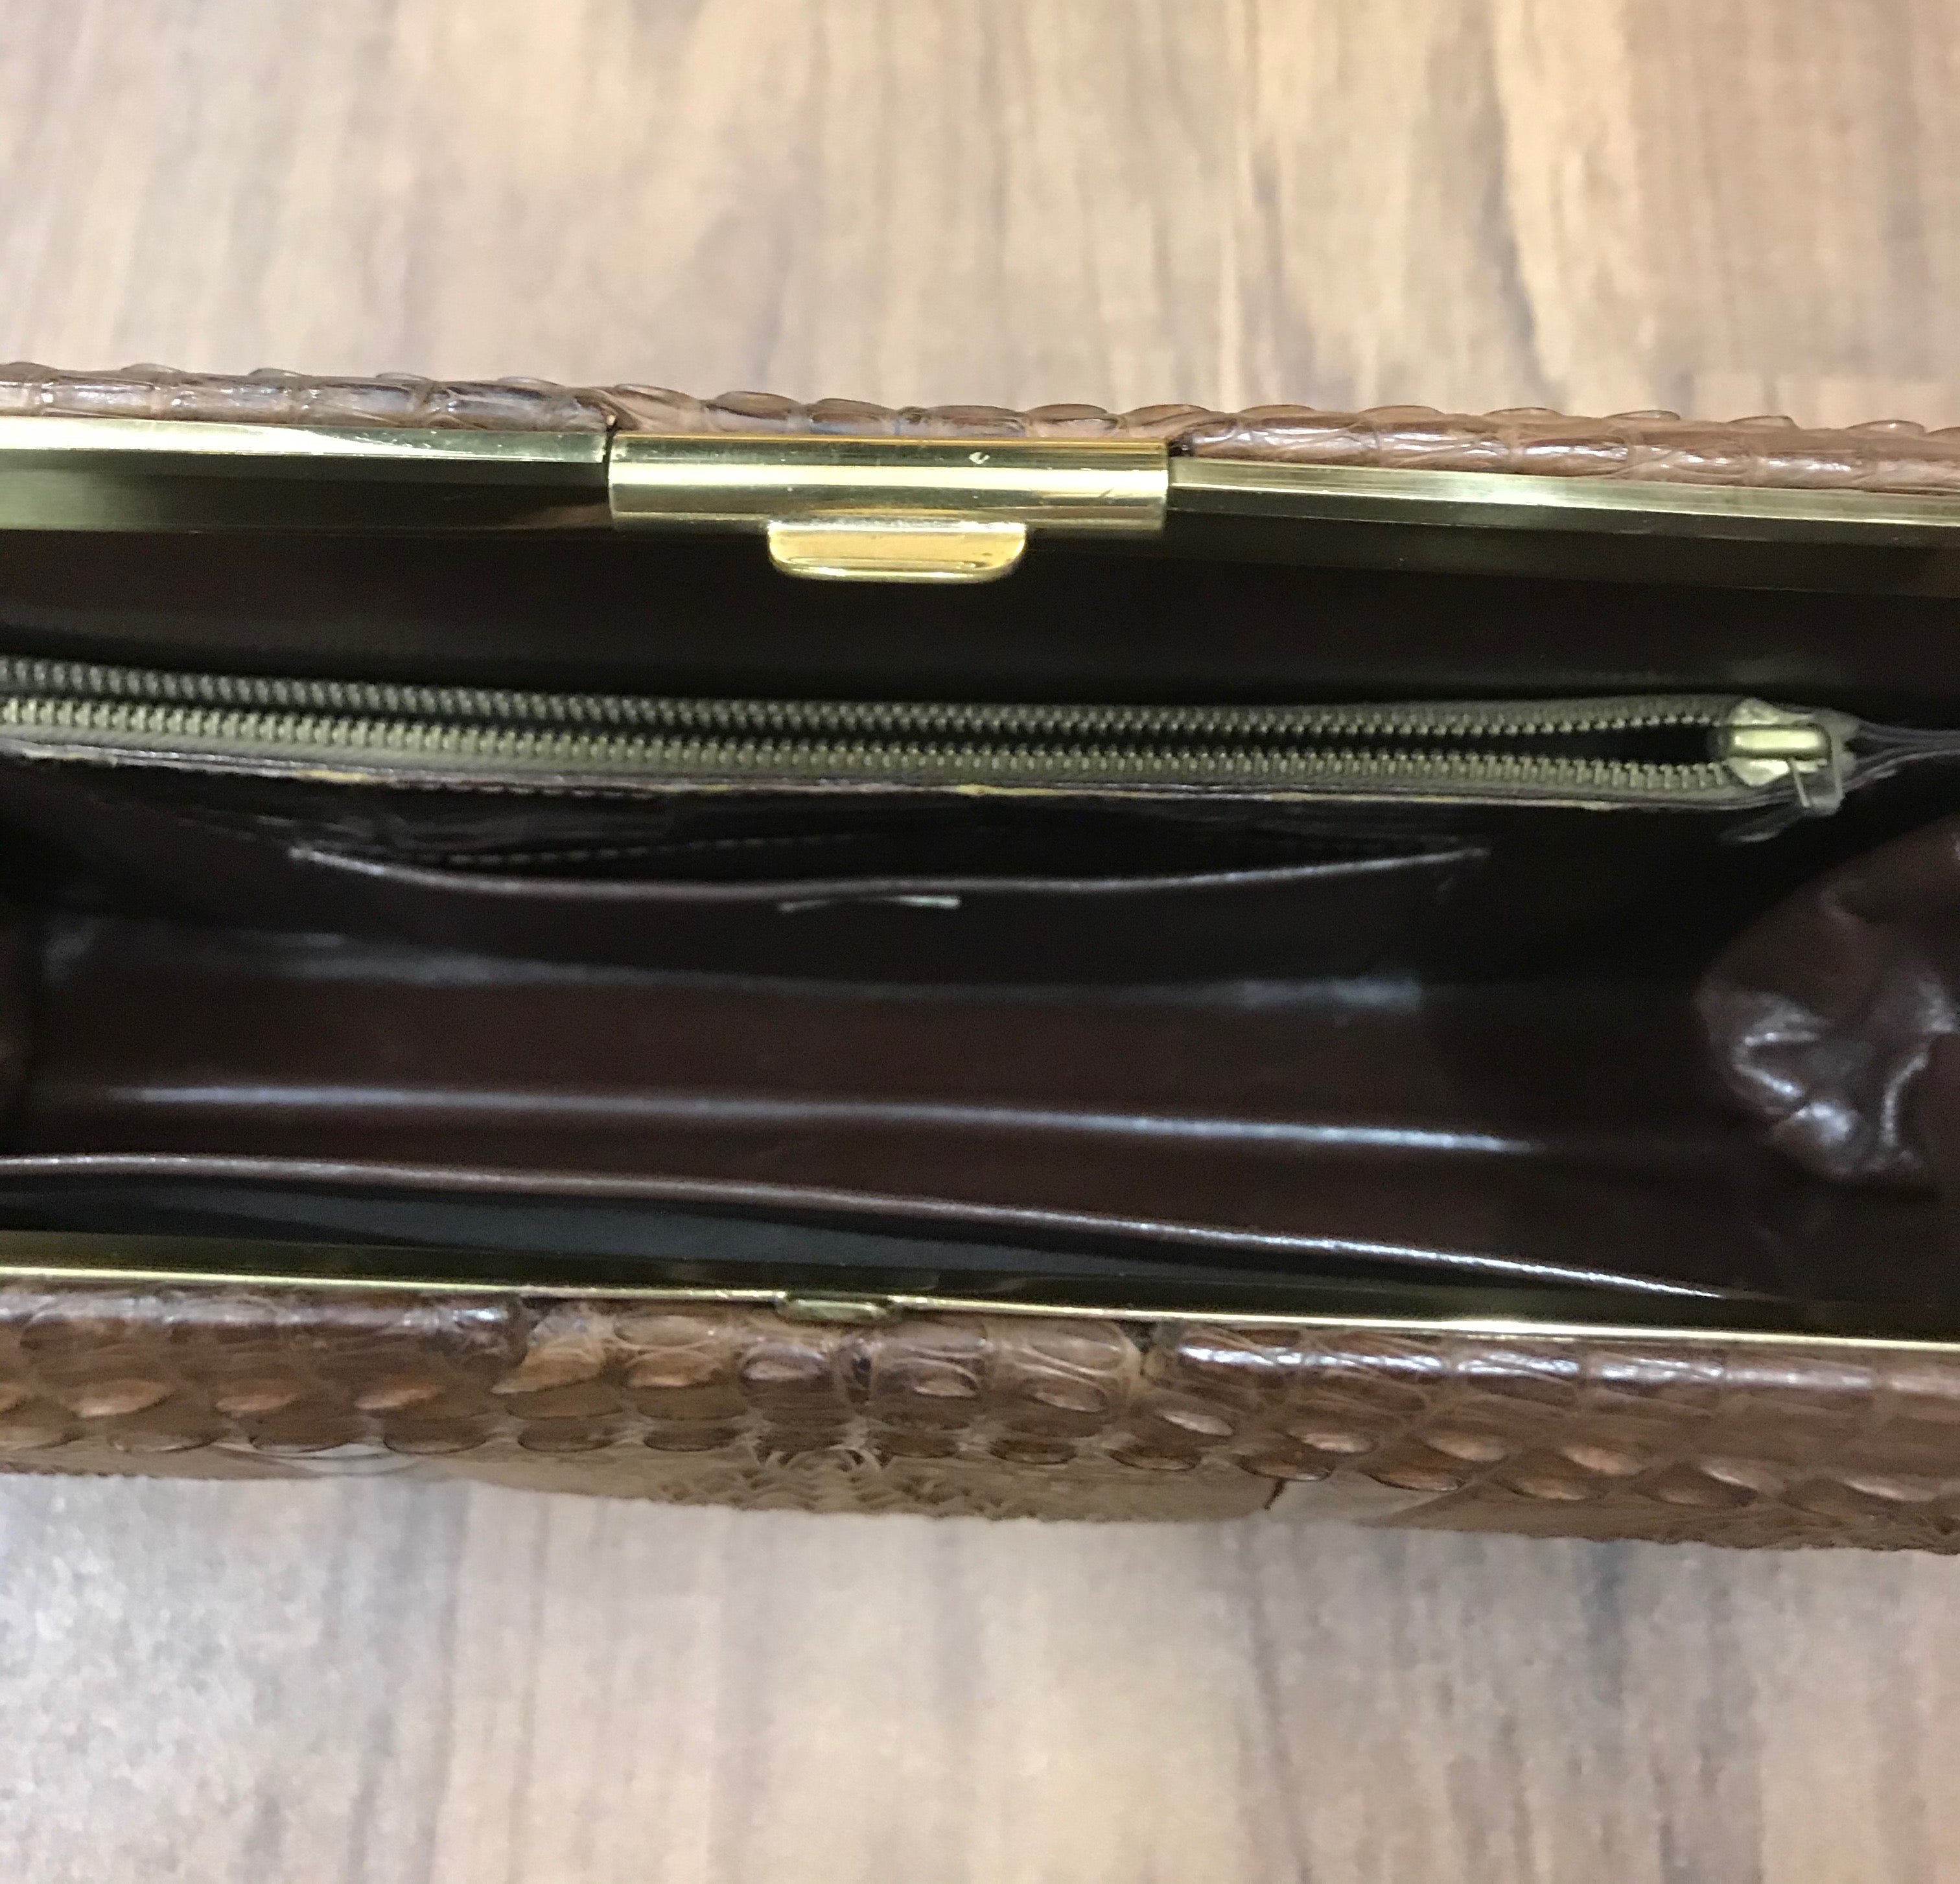 Krokodilleder Handtasche Vintage mit Portemonnaie